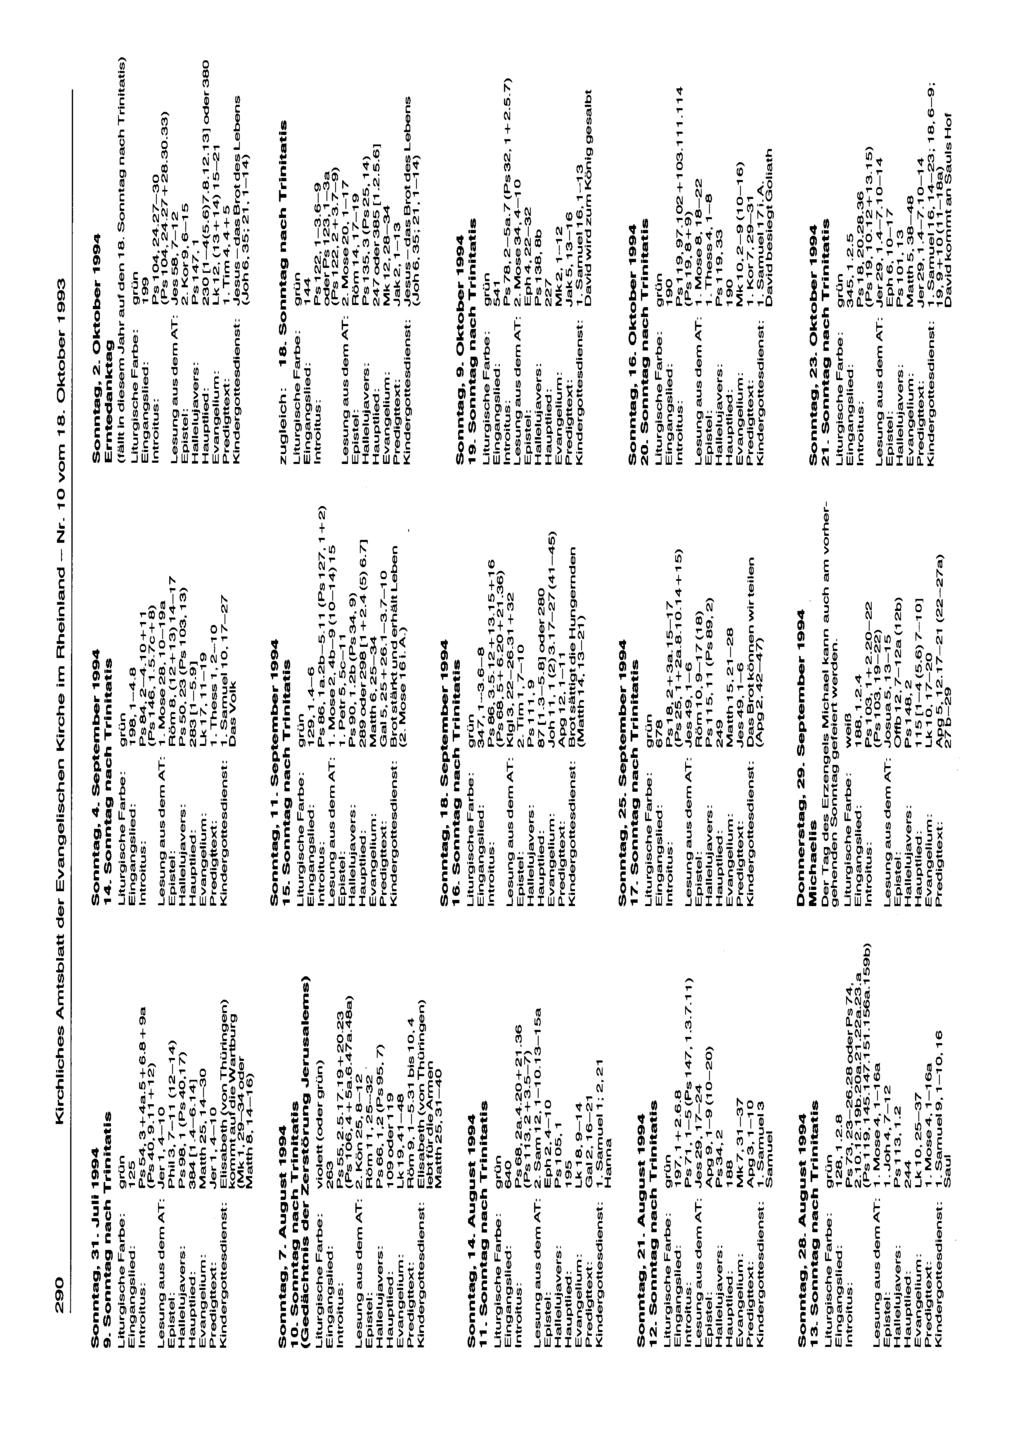 290 Kirchliches Amtsblatt der Evangelischen Kirche im Rheinland - Nr. 10 vom 18. Oktober 1993 Sonntag, 31. Juli 1994 9. Sonntag nach Trinitatis grün 125 Ps54,3+4a5+6.8+9a (Ps40,9.